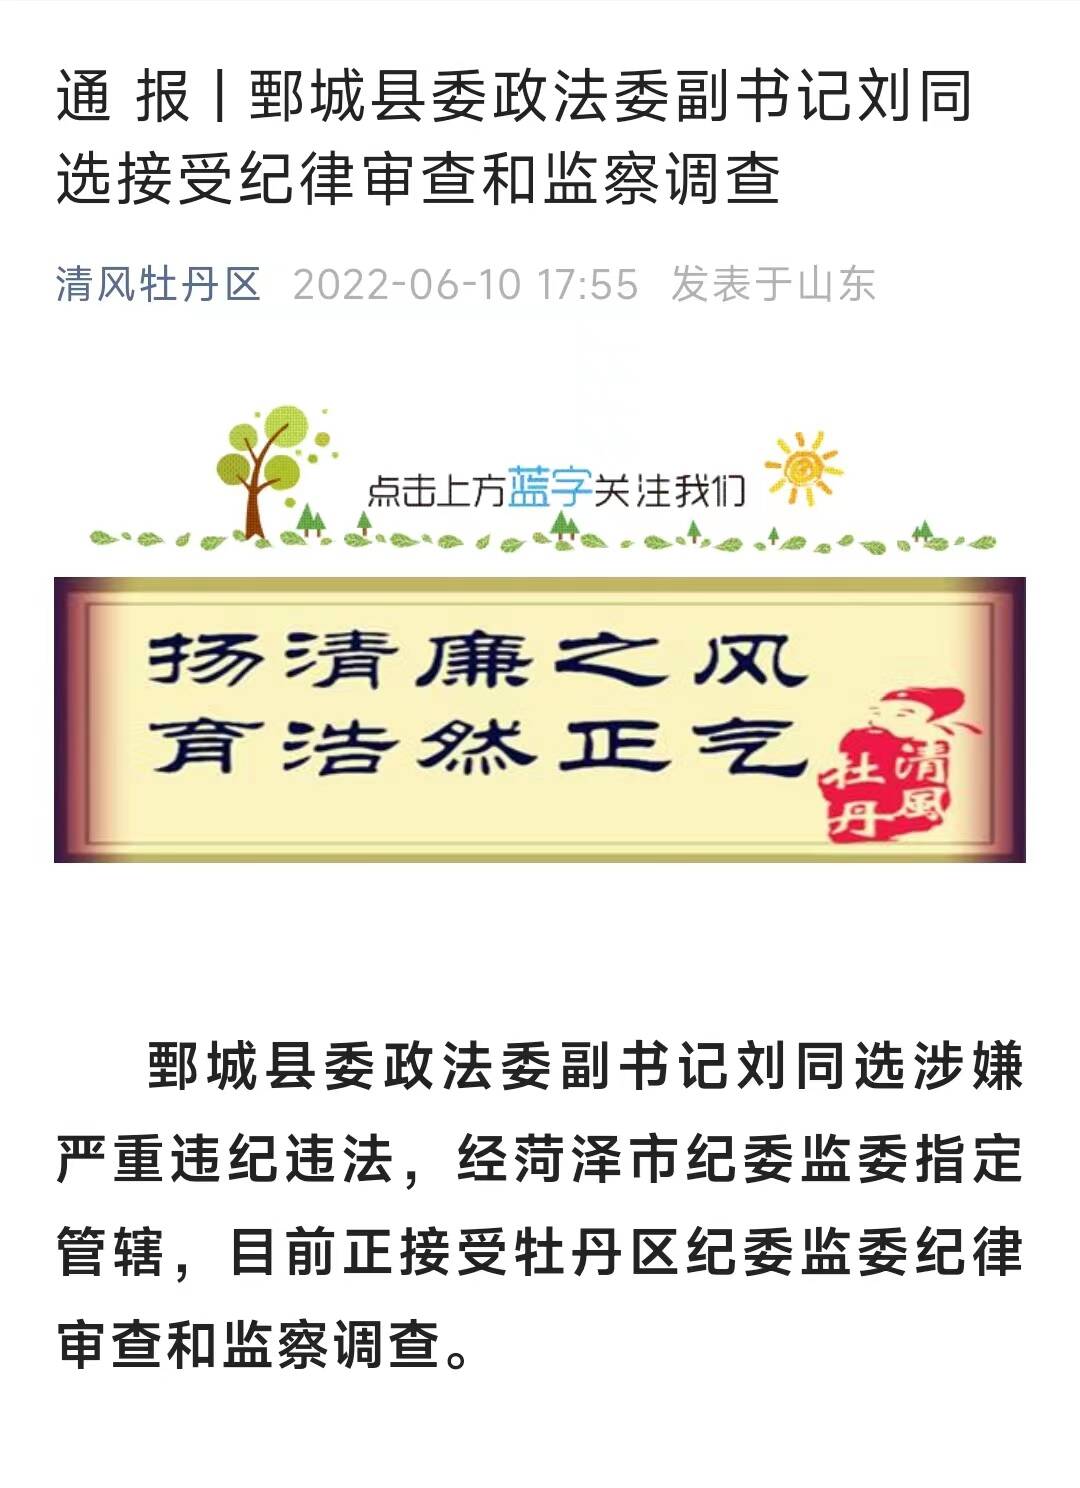 鄄城县委政法委副书记刘同选接受纪律审查和监察调查